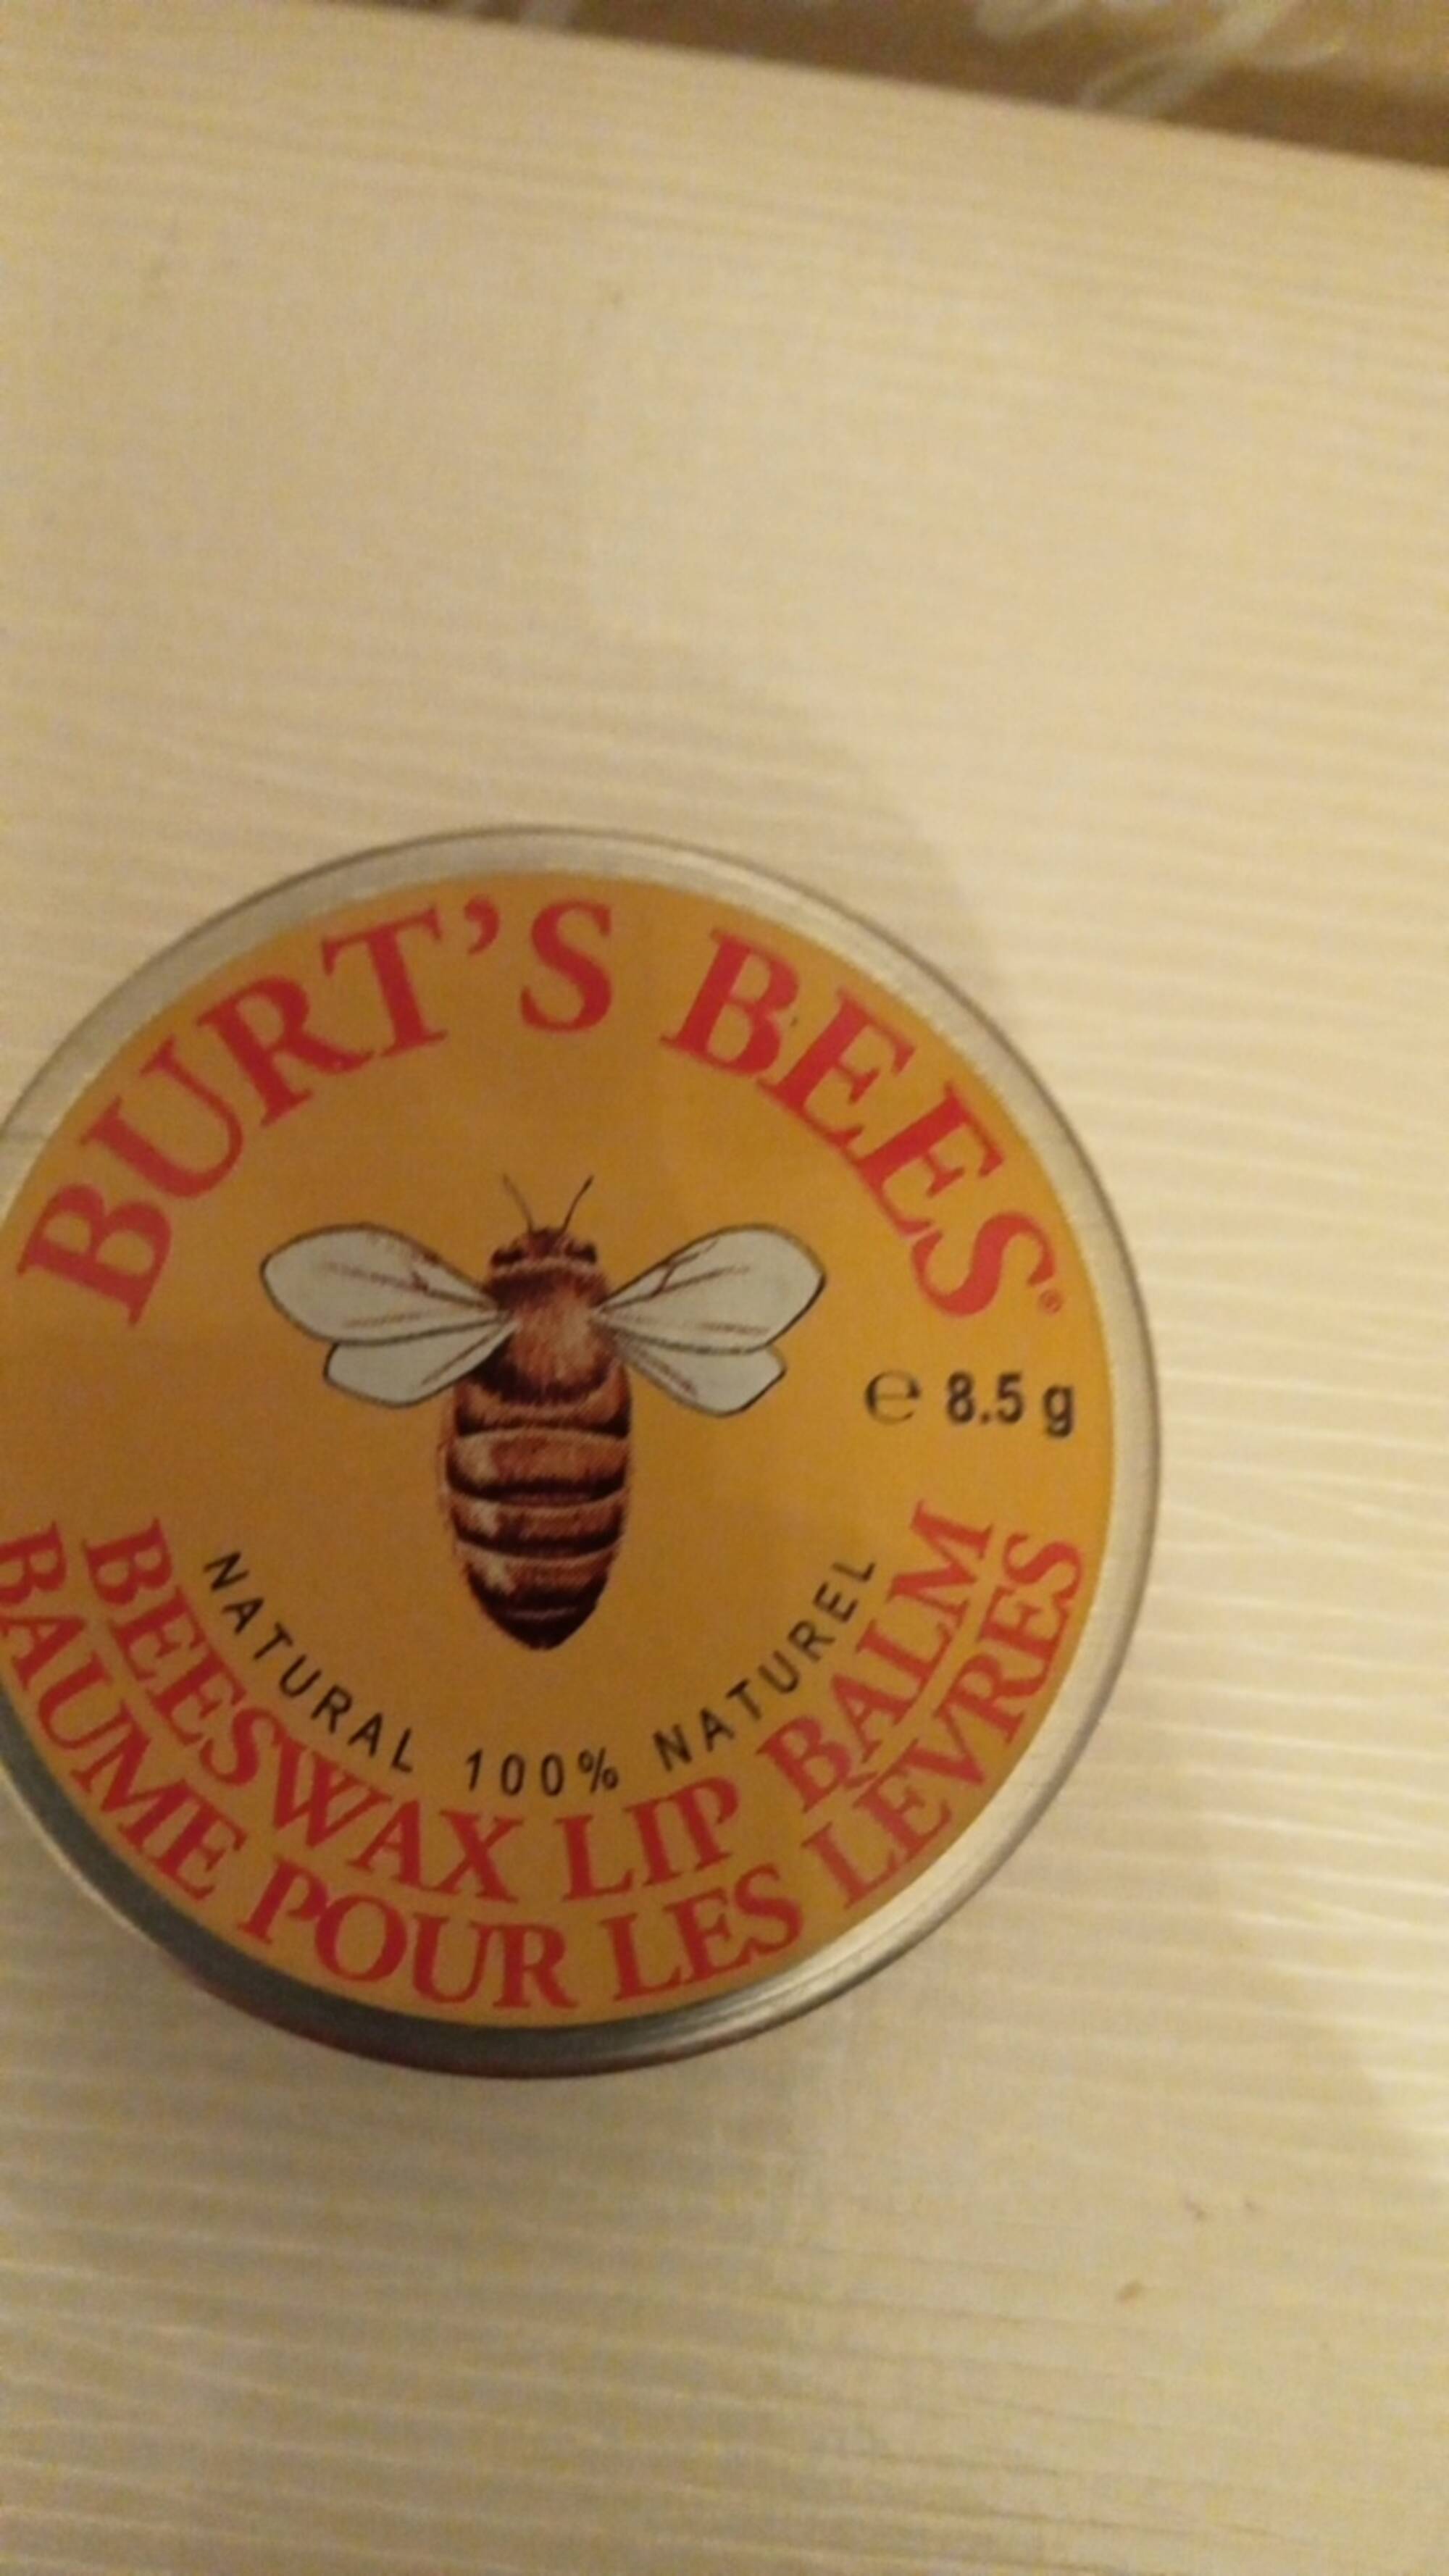 BURT'S BEES - Baume pour les lèvres 